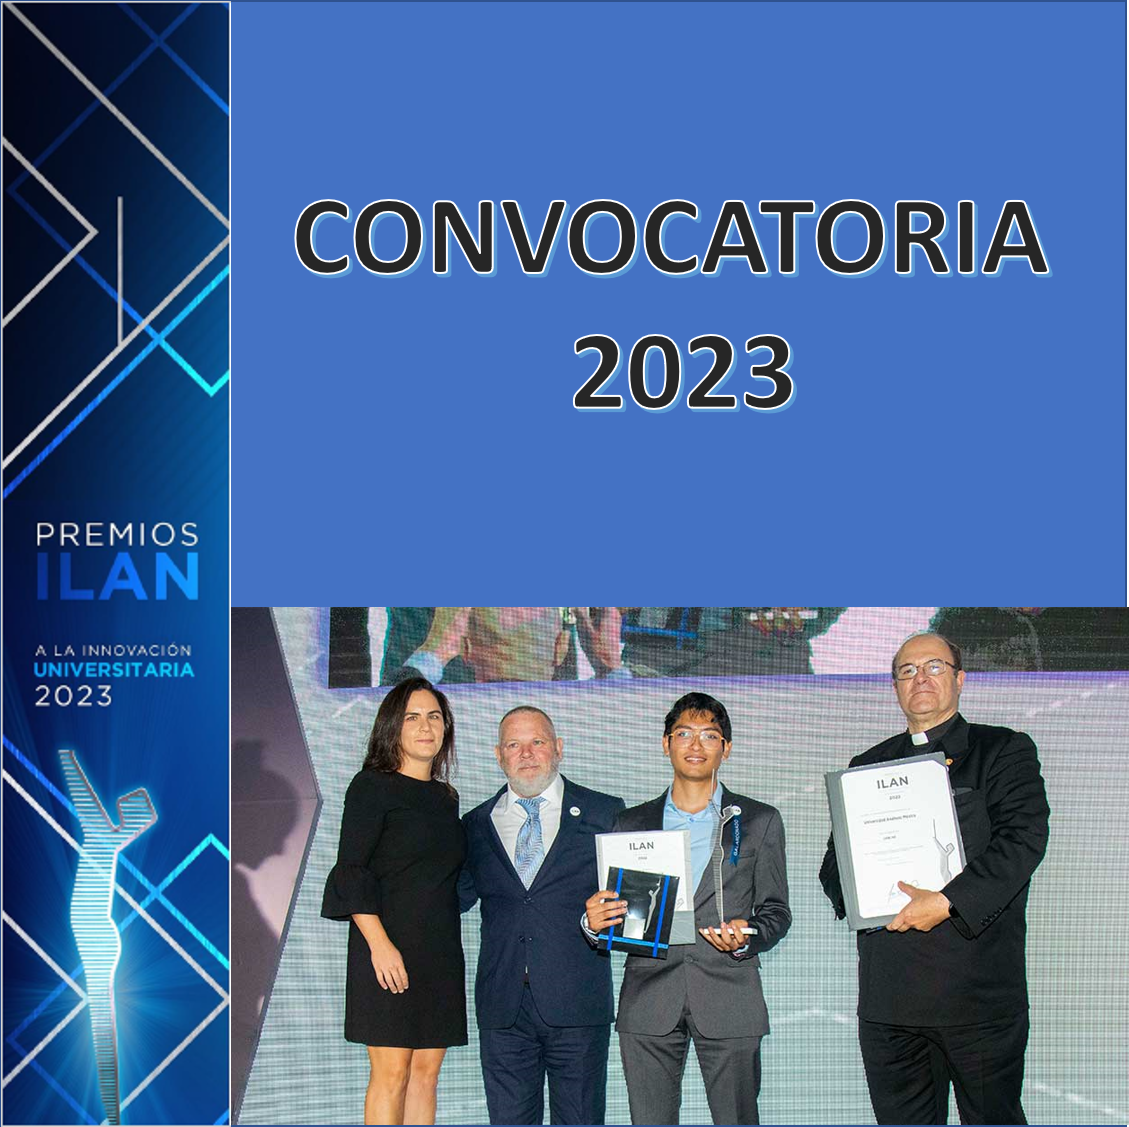 CONVOCATORIA - Premio ILAN a la Innovación Universitaria 2023